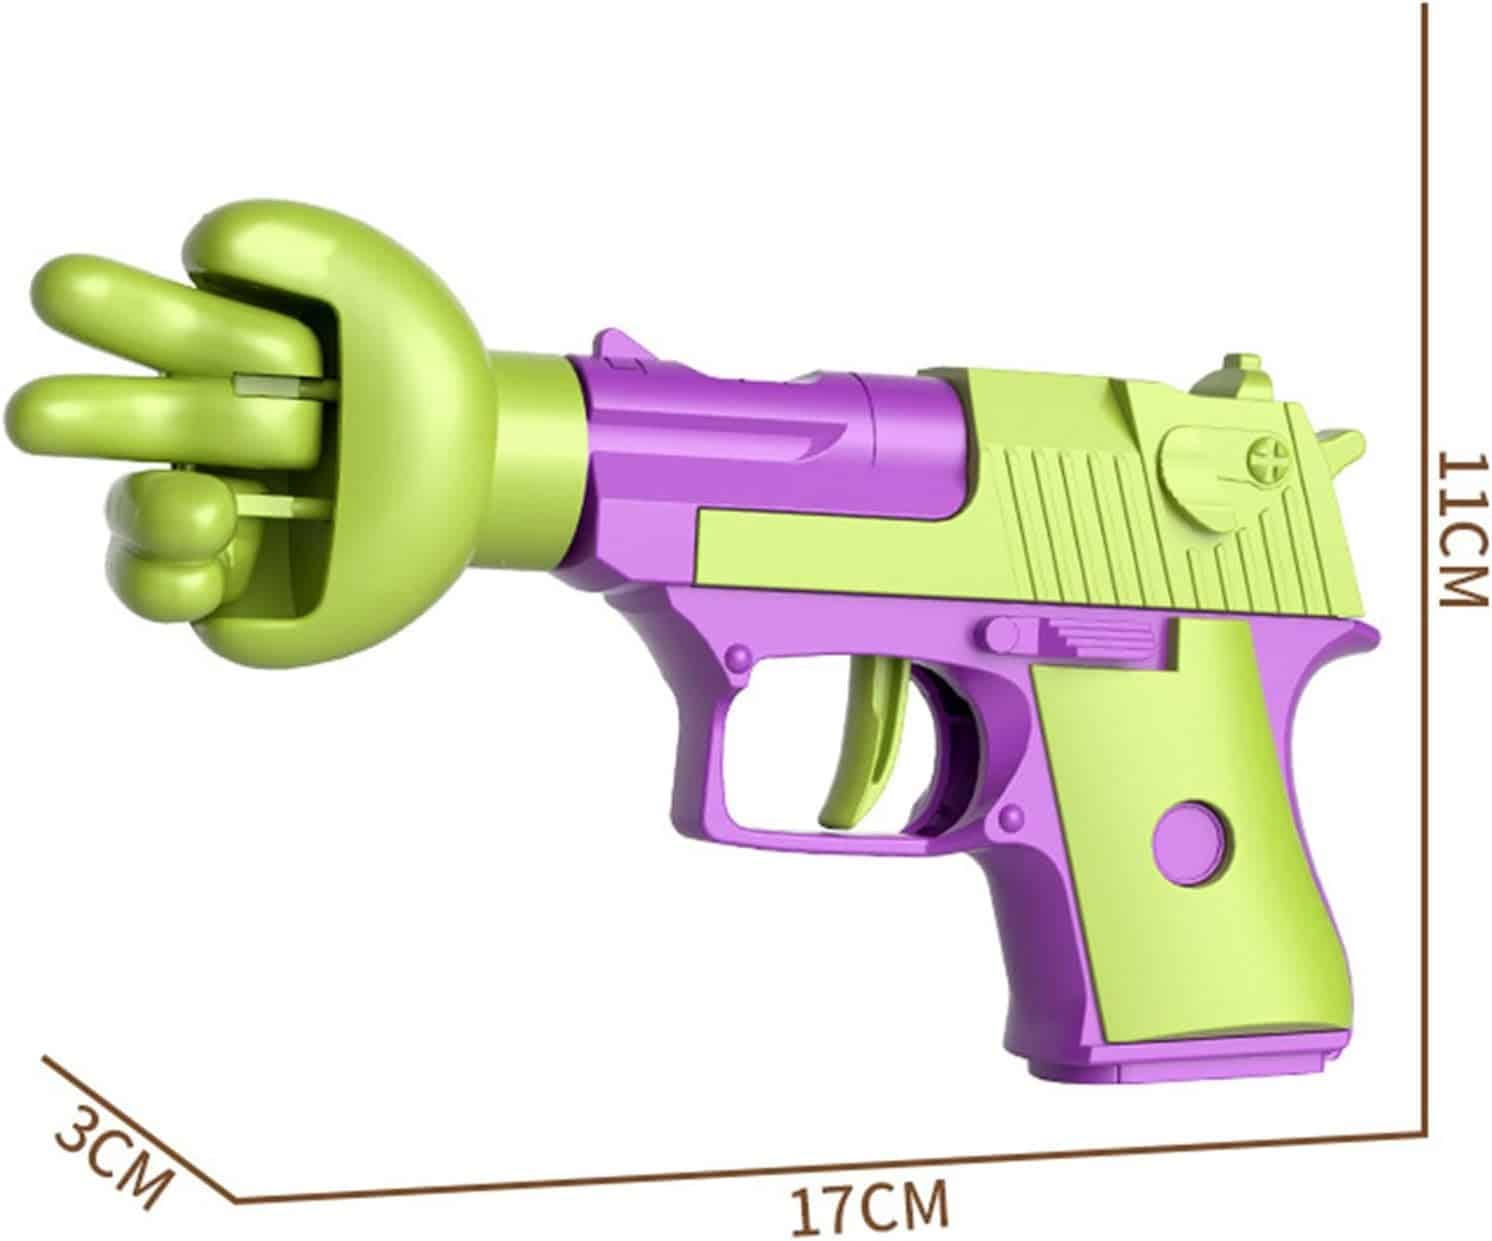 Toy gun 6